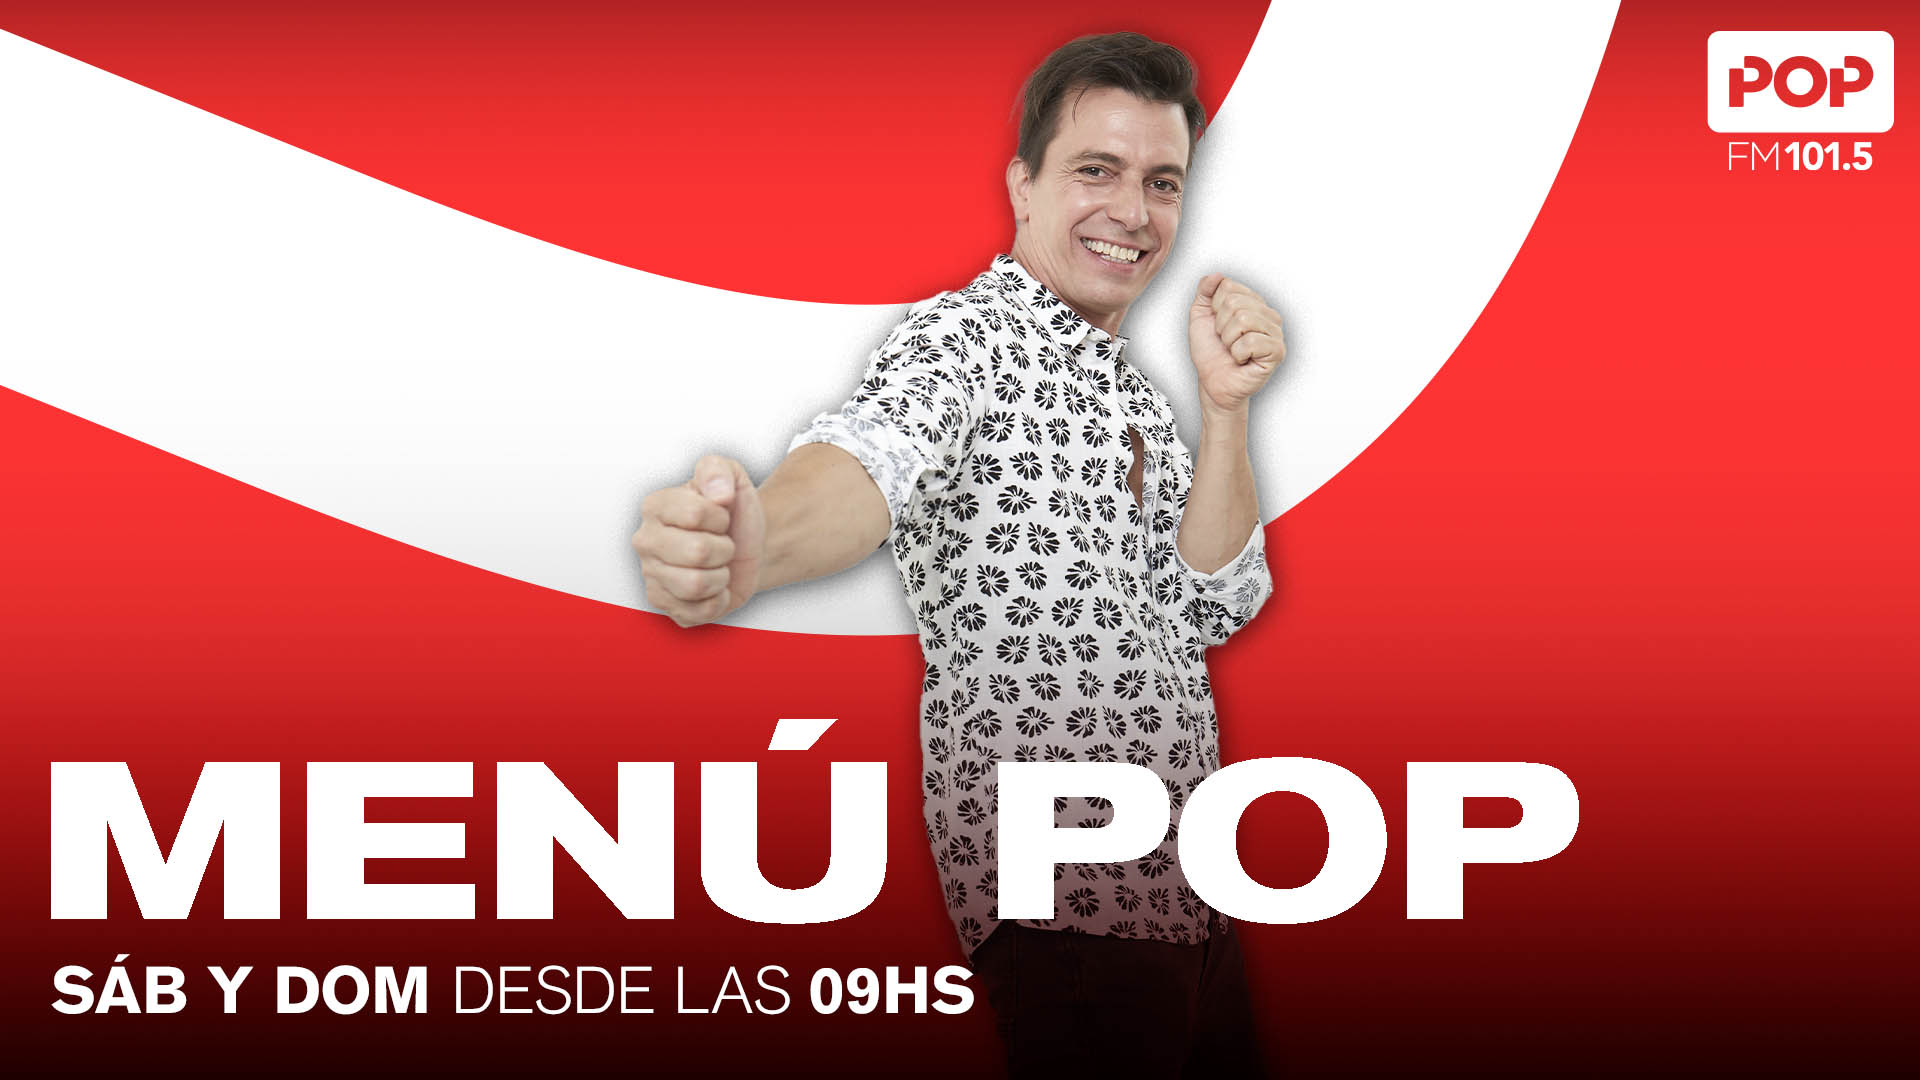 antecedentes Lío Nueva llegada Pop Radio 101.5 FM on Twitter: "A encarar el domingo bien arriba con  @luispineyro en #MenúPop 🙌 Contanos qué tema querés que pasemos 🎼  Escuchanos en vivo ⤵️ 📻101.5 FM 💻Youtube Pop